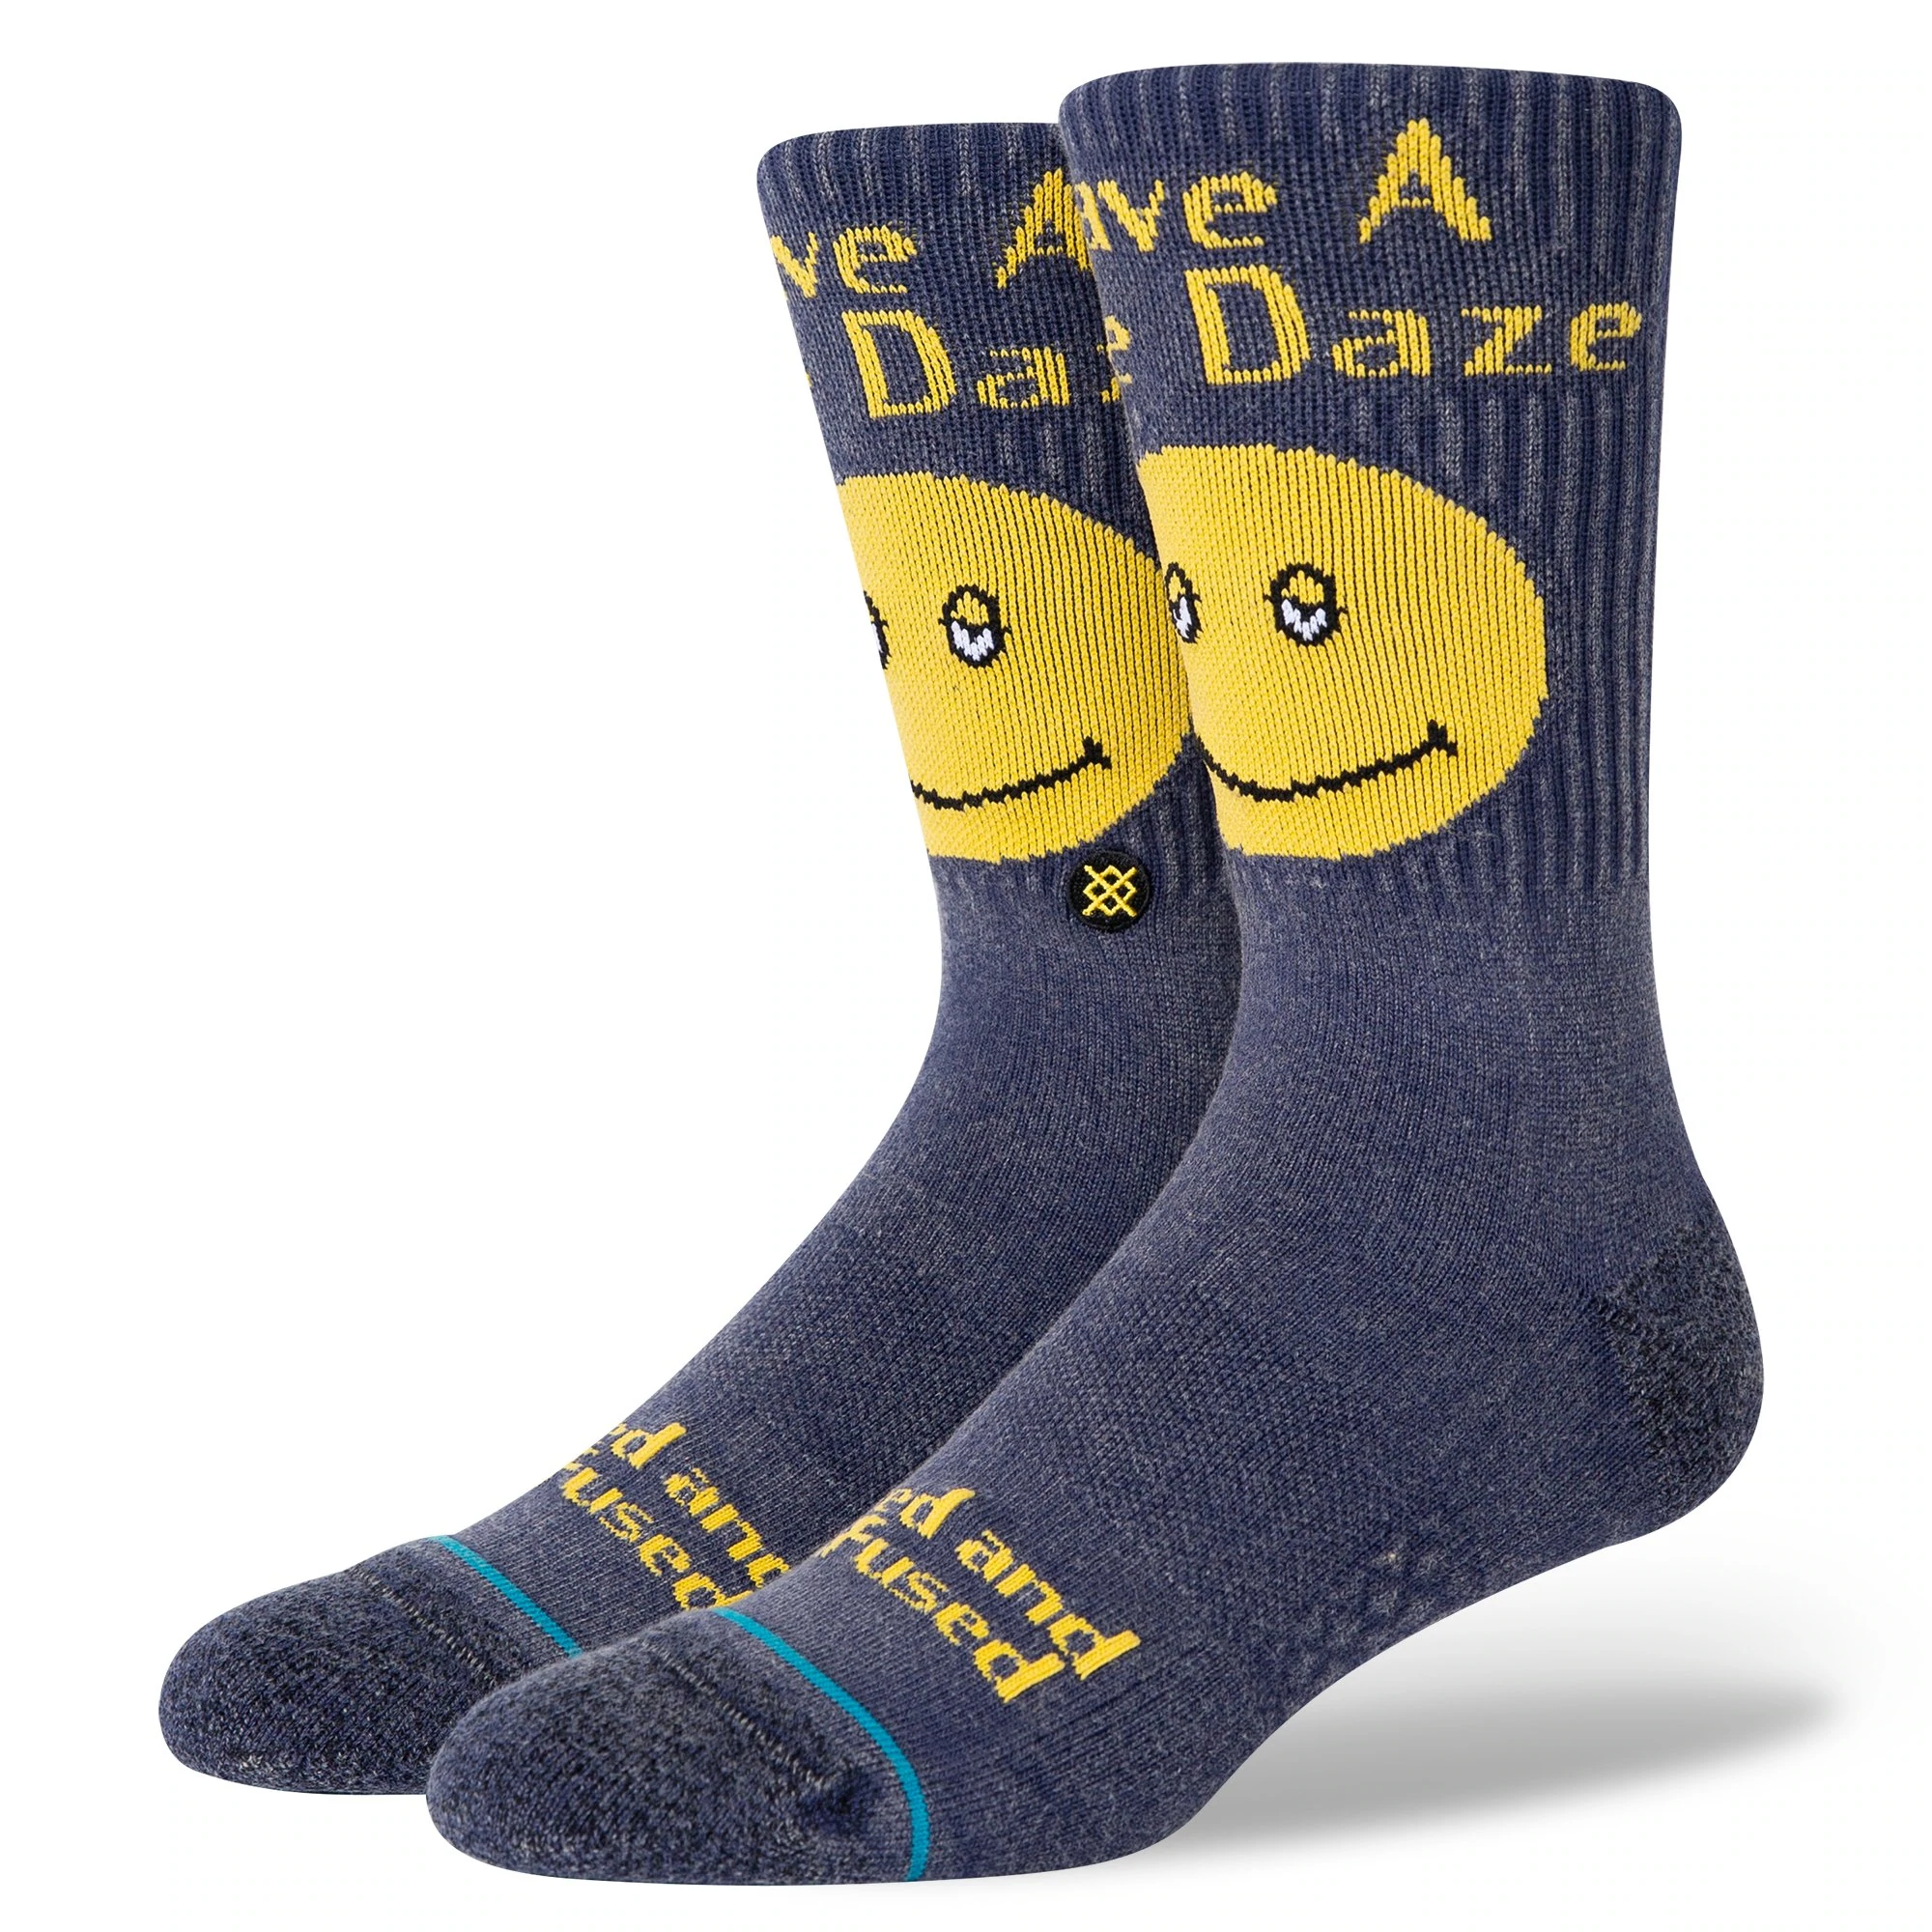 Stance Have A Nice Daze sokken